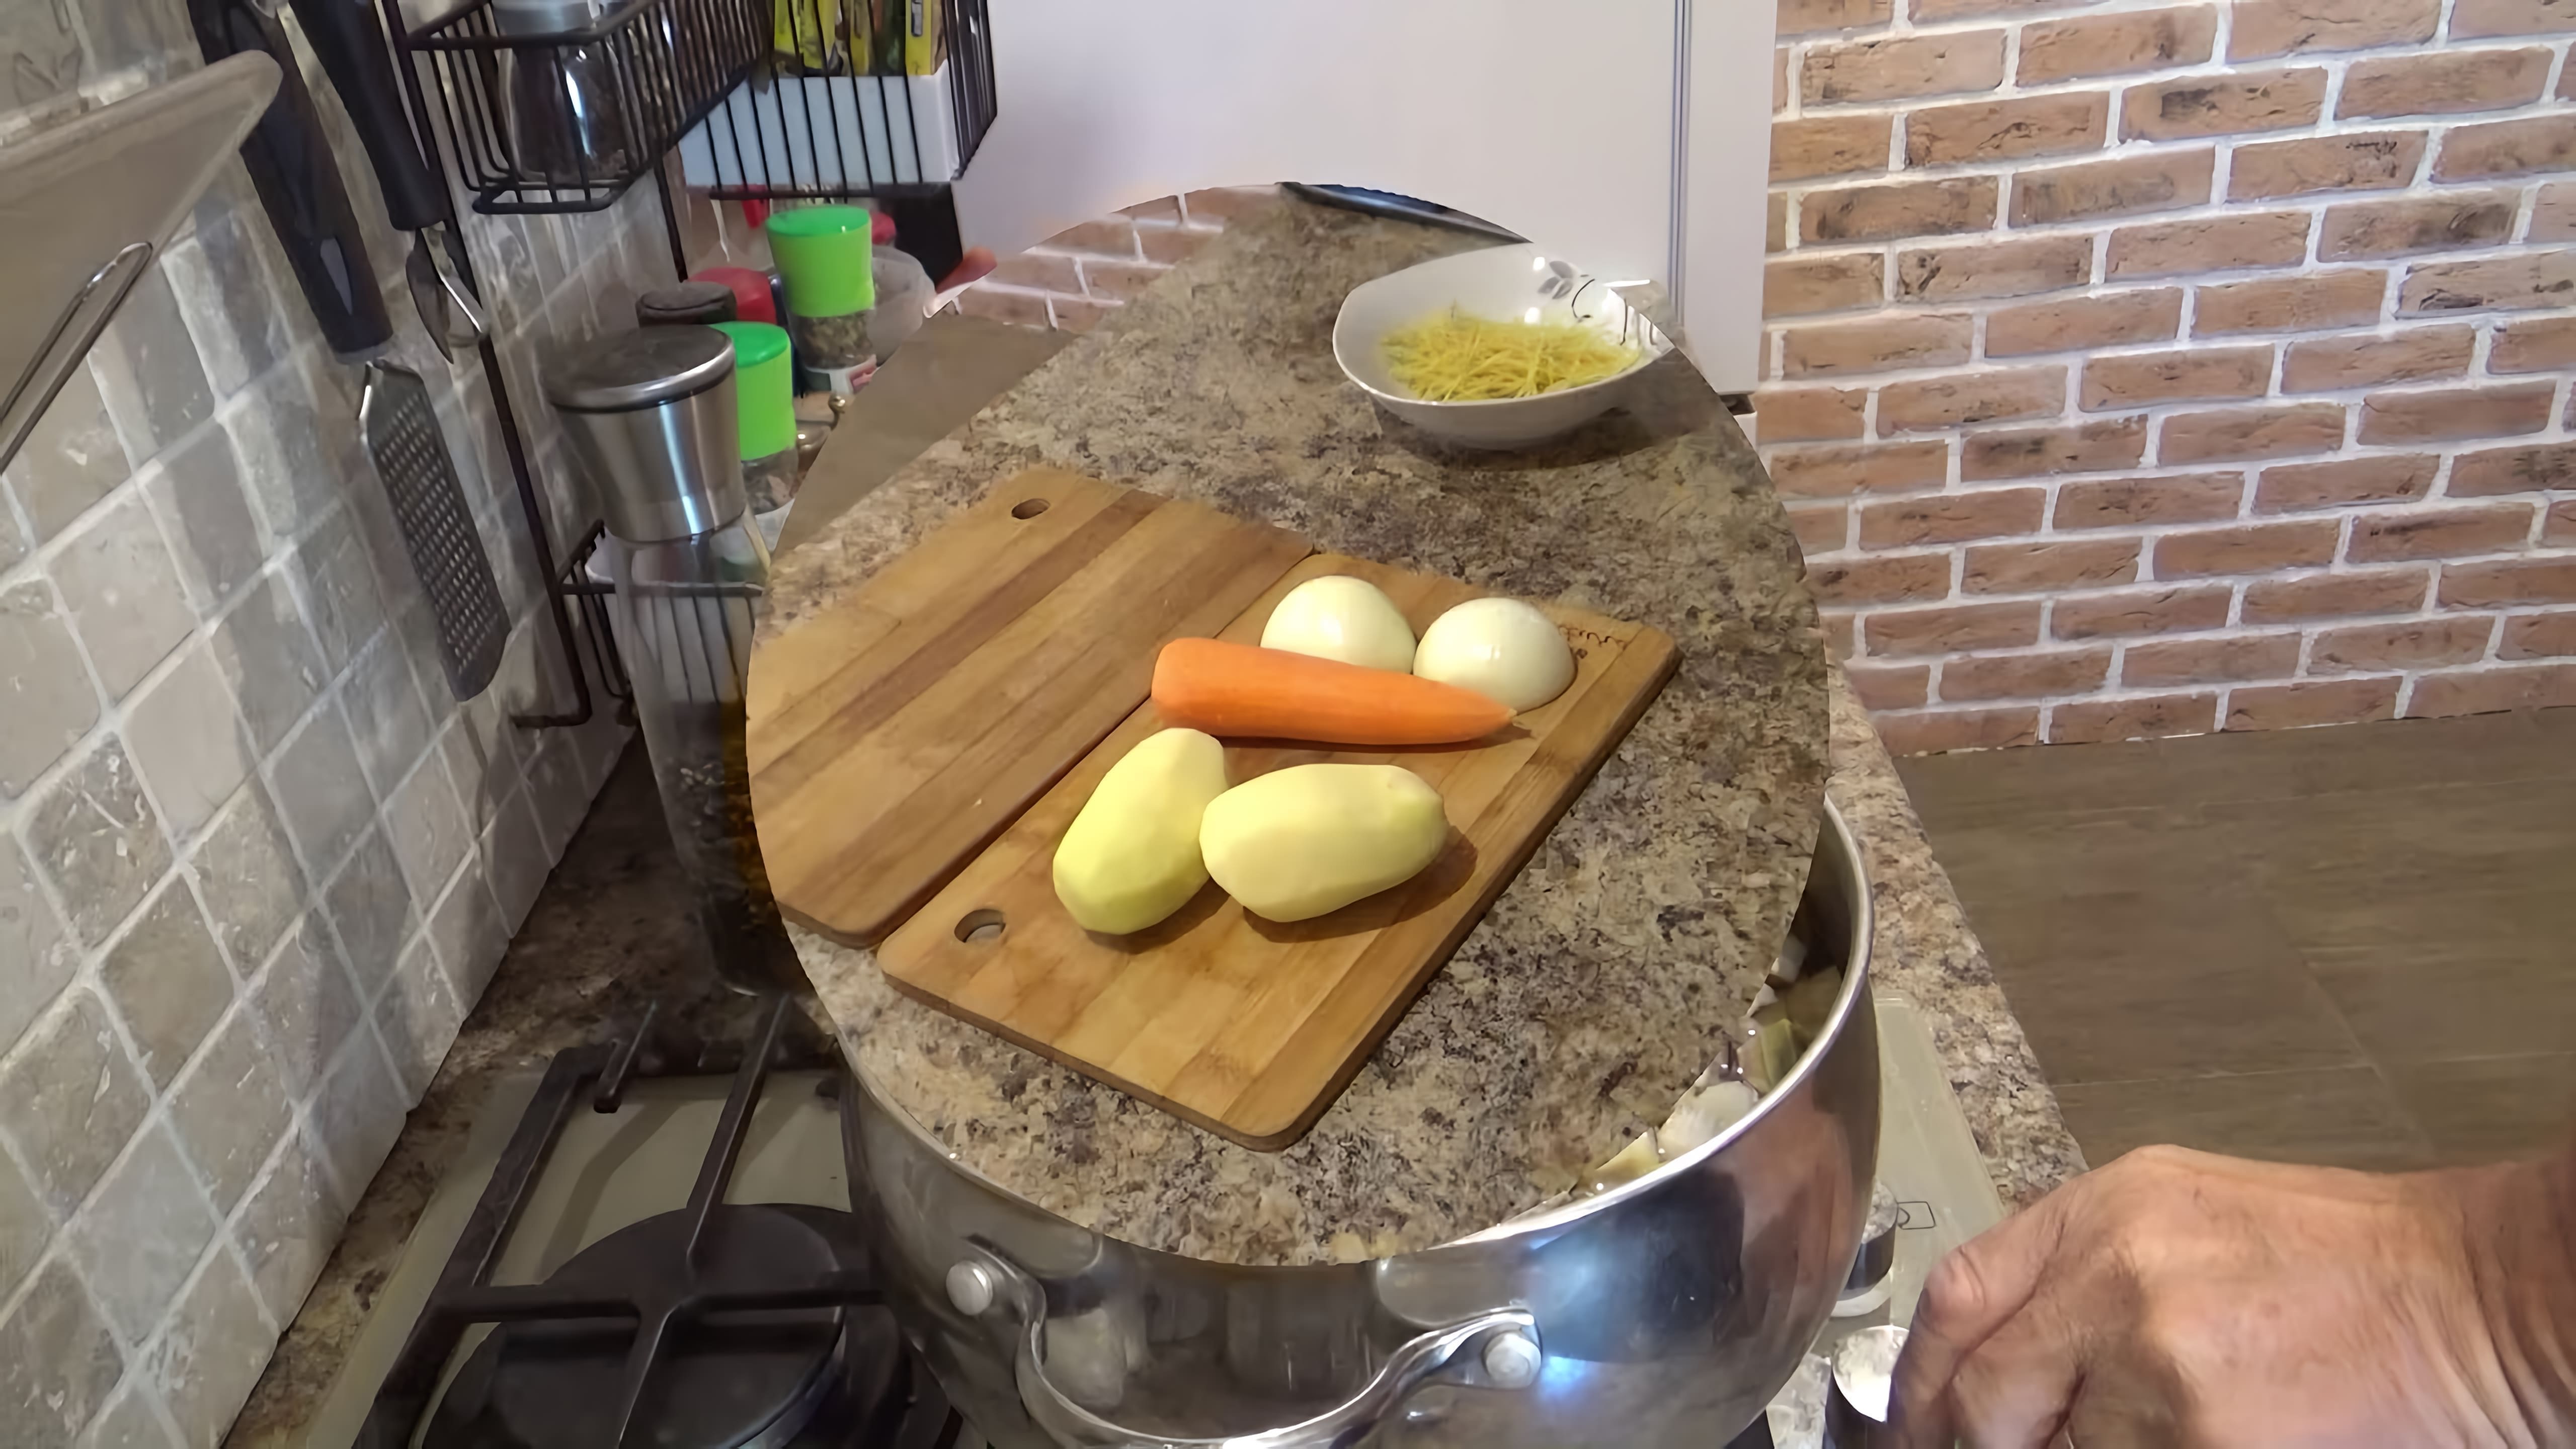 В этом видео демонстрируется процесс приготовления грибного супа с использованием свежих белых грибов, маслят и подосиновиков